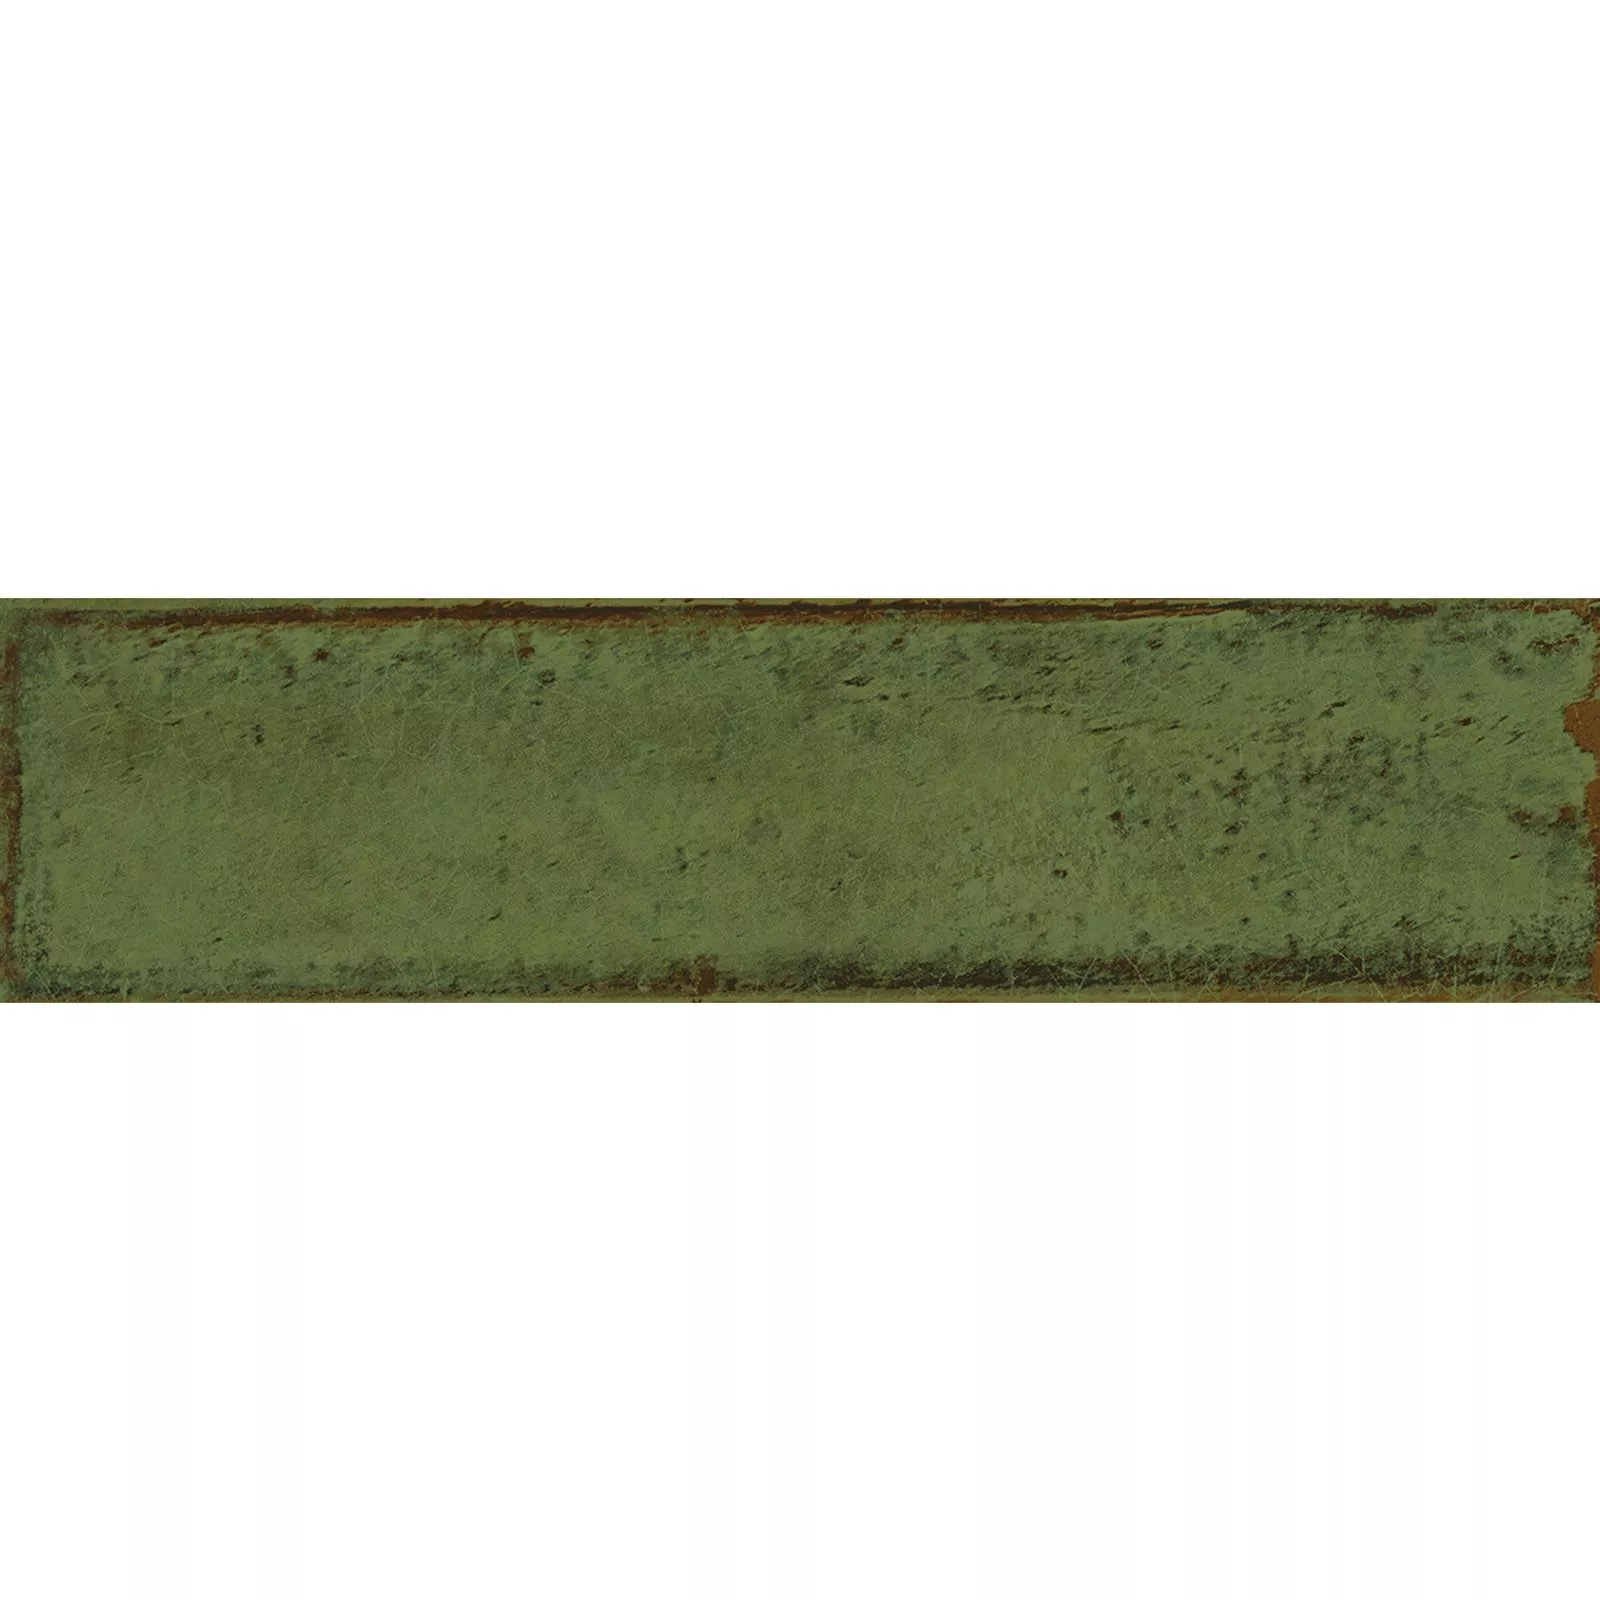 Próbka Płytki Ścienne Maestro Karbowany Błyszczący Zielona Oliwka 7,5x30cm